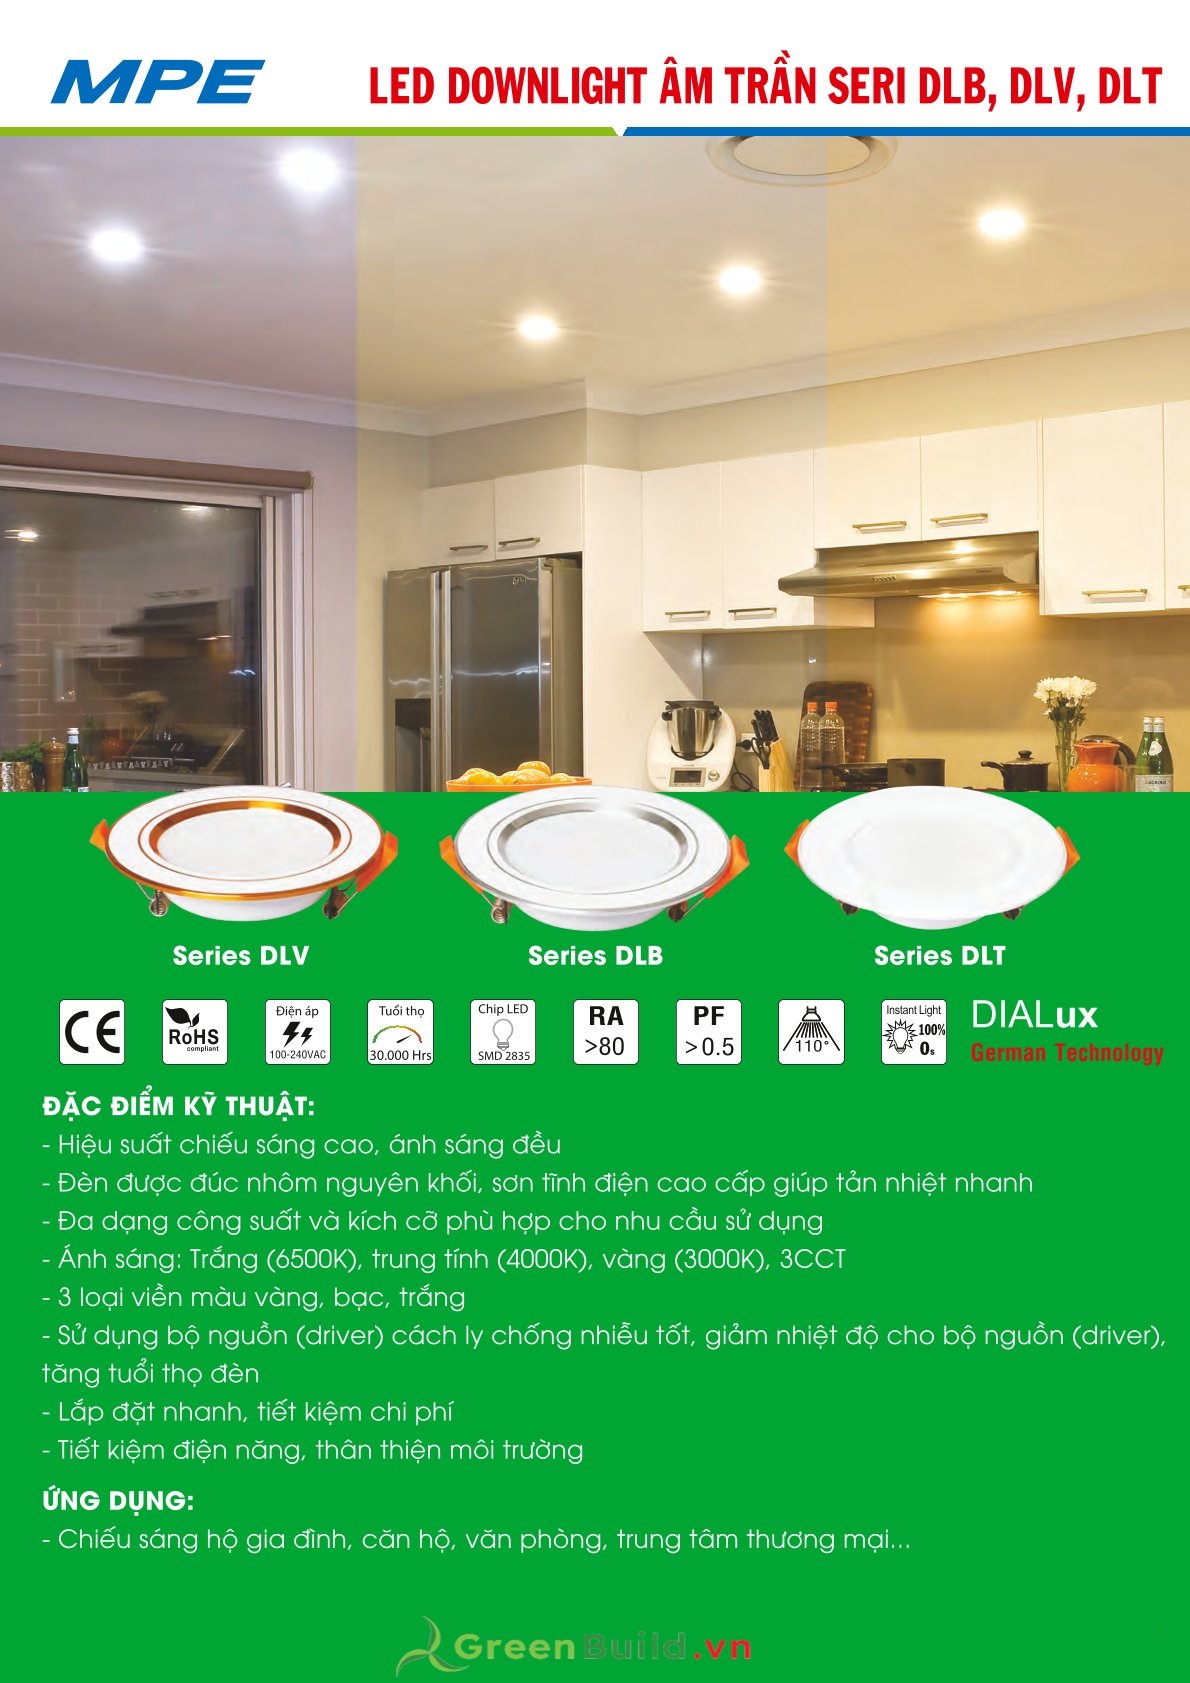 Greenbuild cung cấp đèn LED downlight 3 màu MPE DLT 12W [DLT-12/3C], đèn downlight âm trần 3 màu chất lượng cao, đèn LED MPE được bảo hành lâu dài